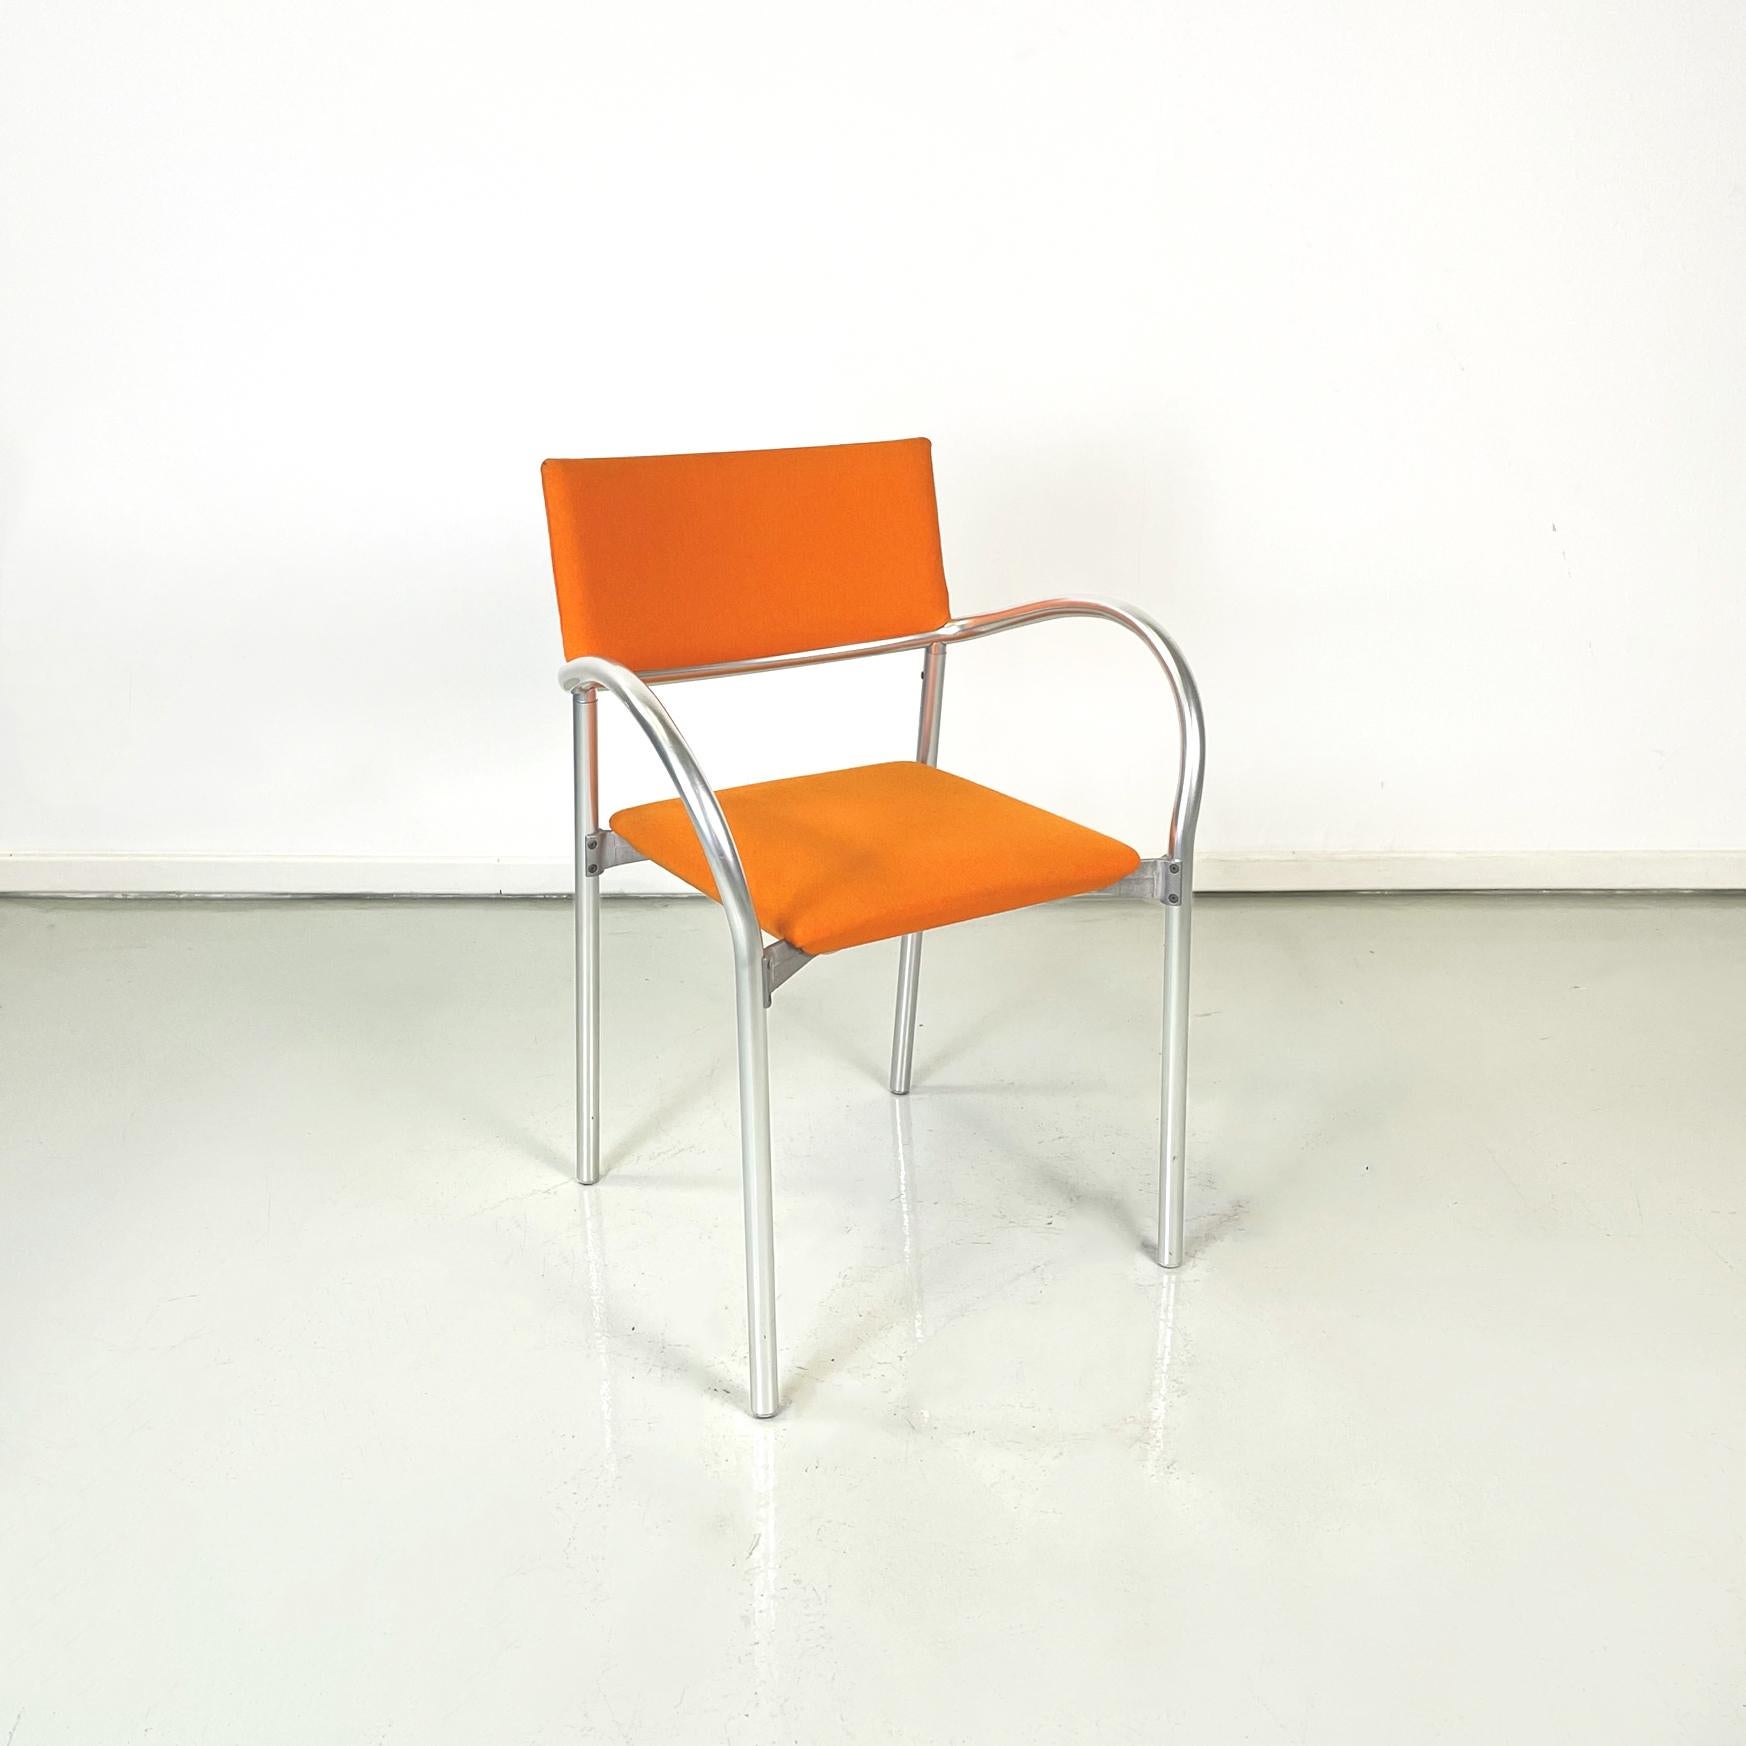 Italienische moderne orange Stoff Stühle mod. Breeze von Carlo Bartoli für Segis, 1980er Jahre
Paar Stühle mod. Breeze mit mattem Aluminium rohrförmige Struktur. Sitz und Rückenlehne sind gepolstert und mit orangefarbenem Stoff bezogen. Armlehnen